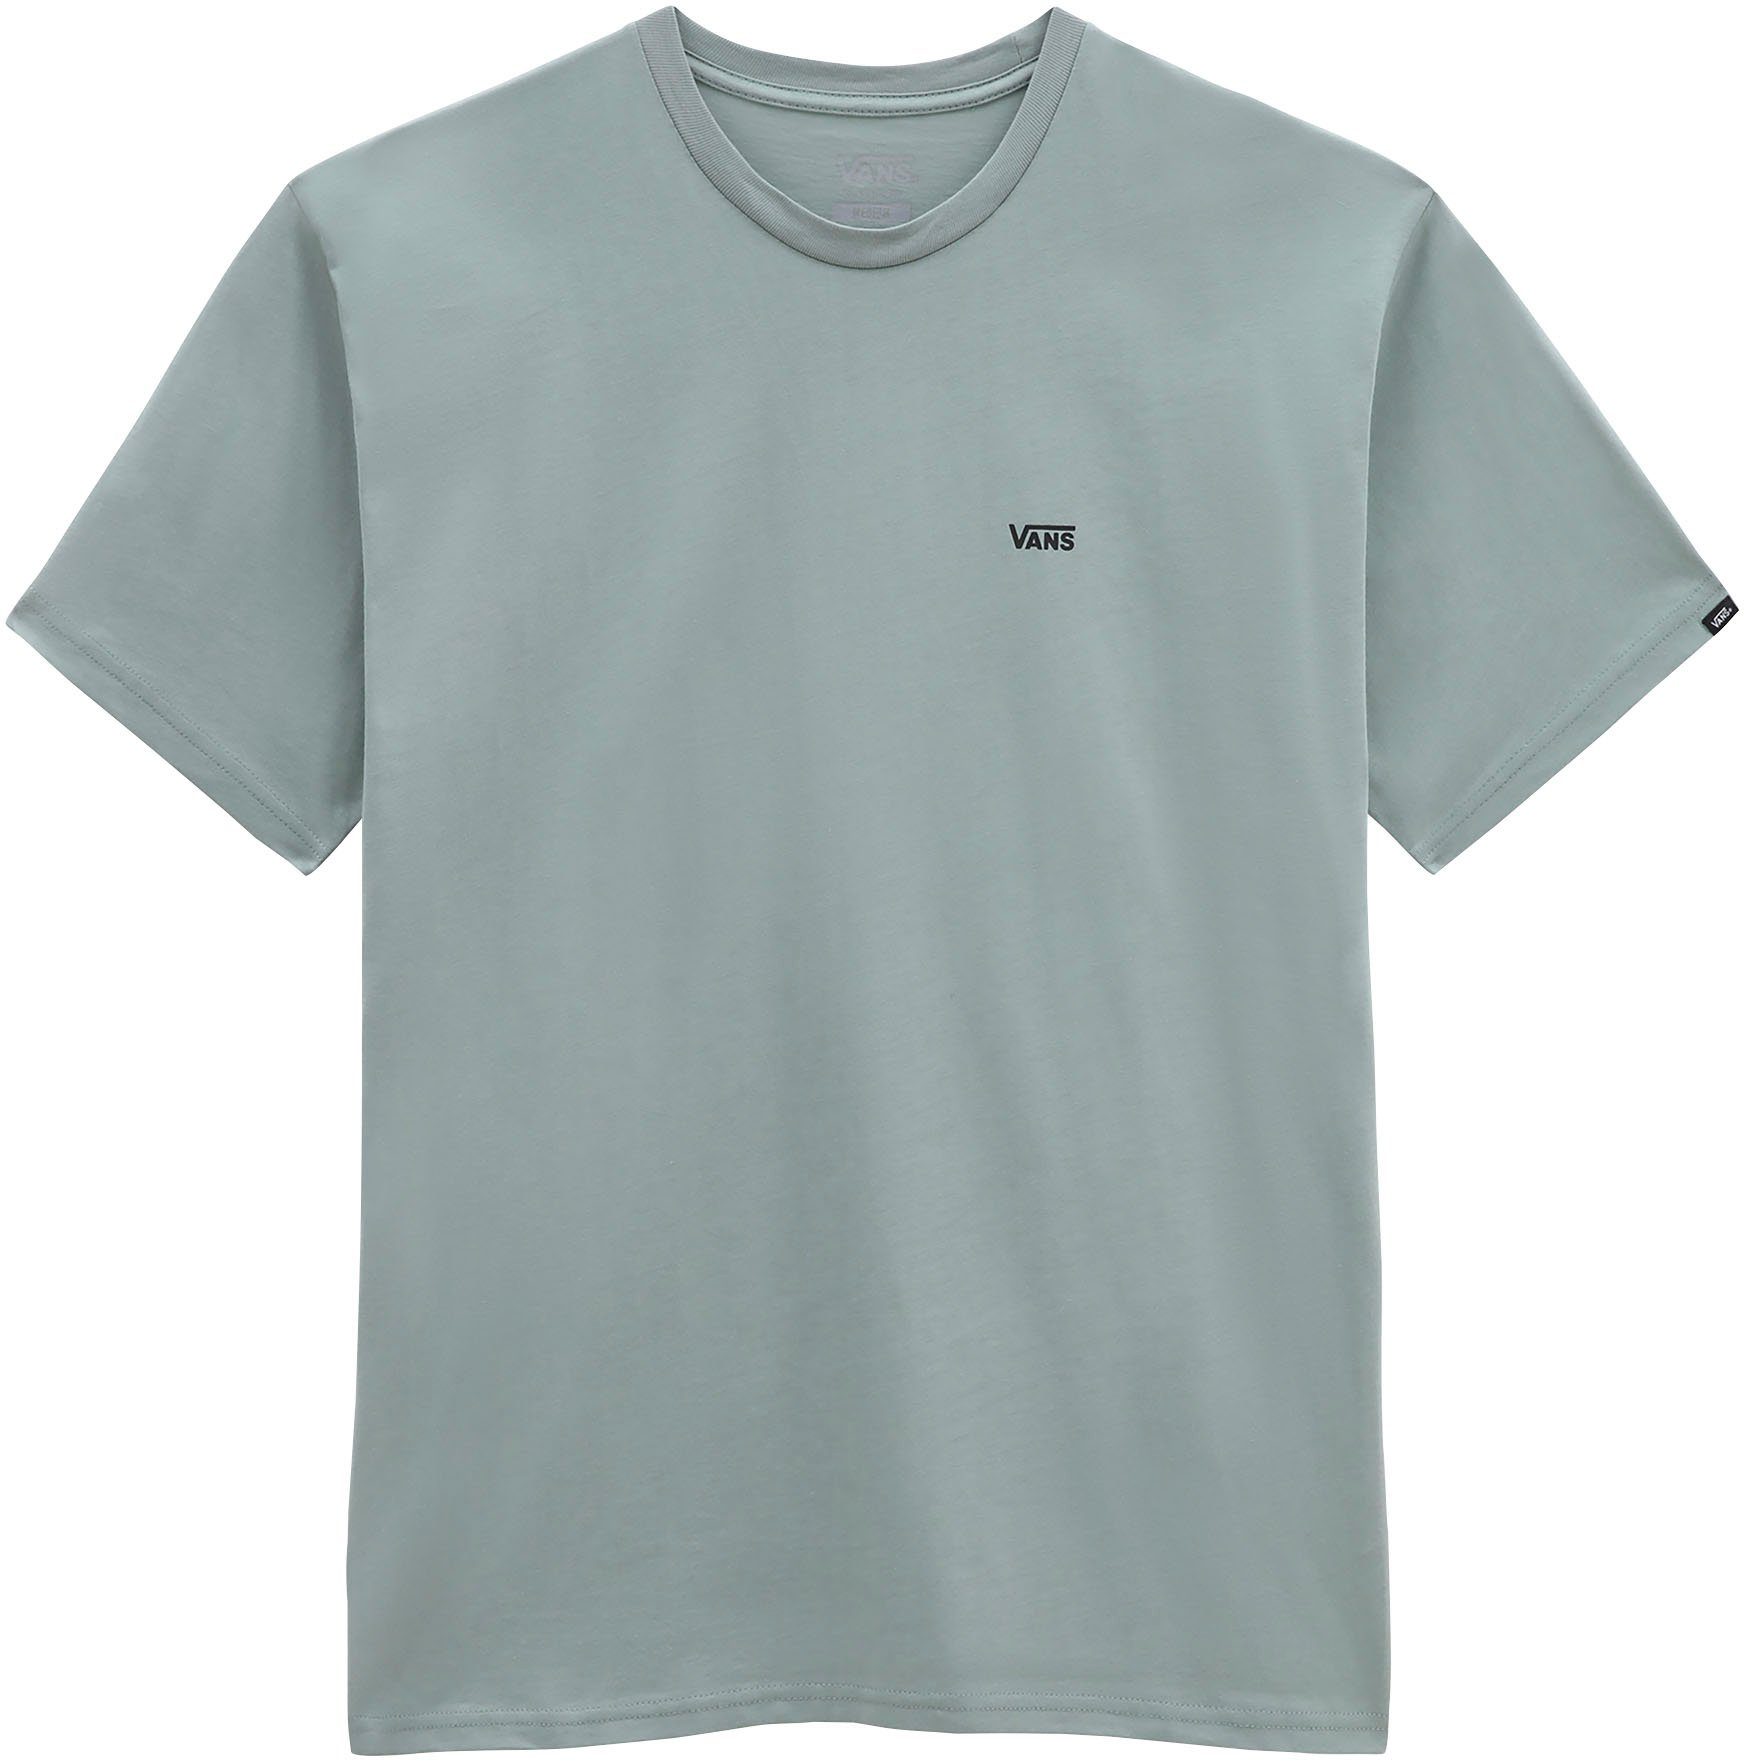 Vans Jungen T-Shirts online kaufen | OTTO | T-Shirts